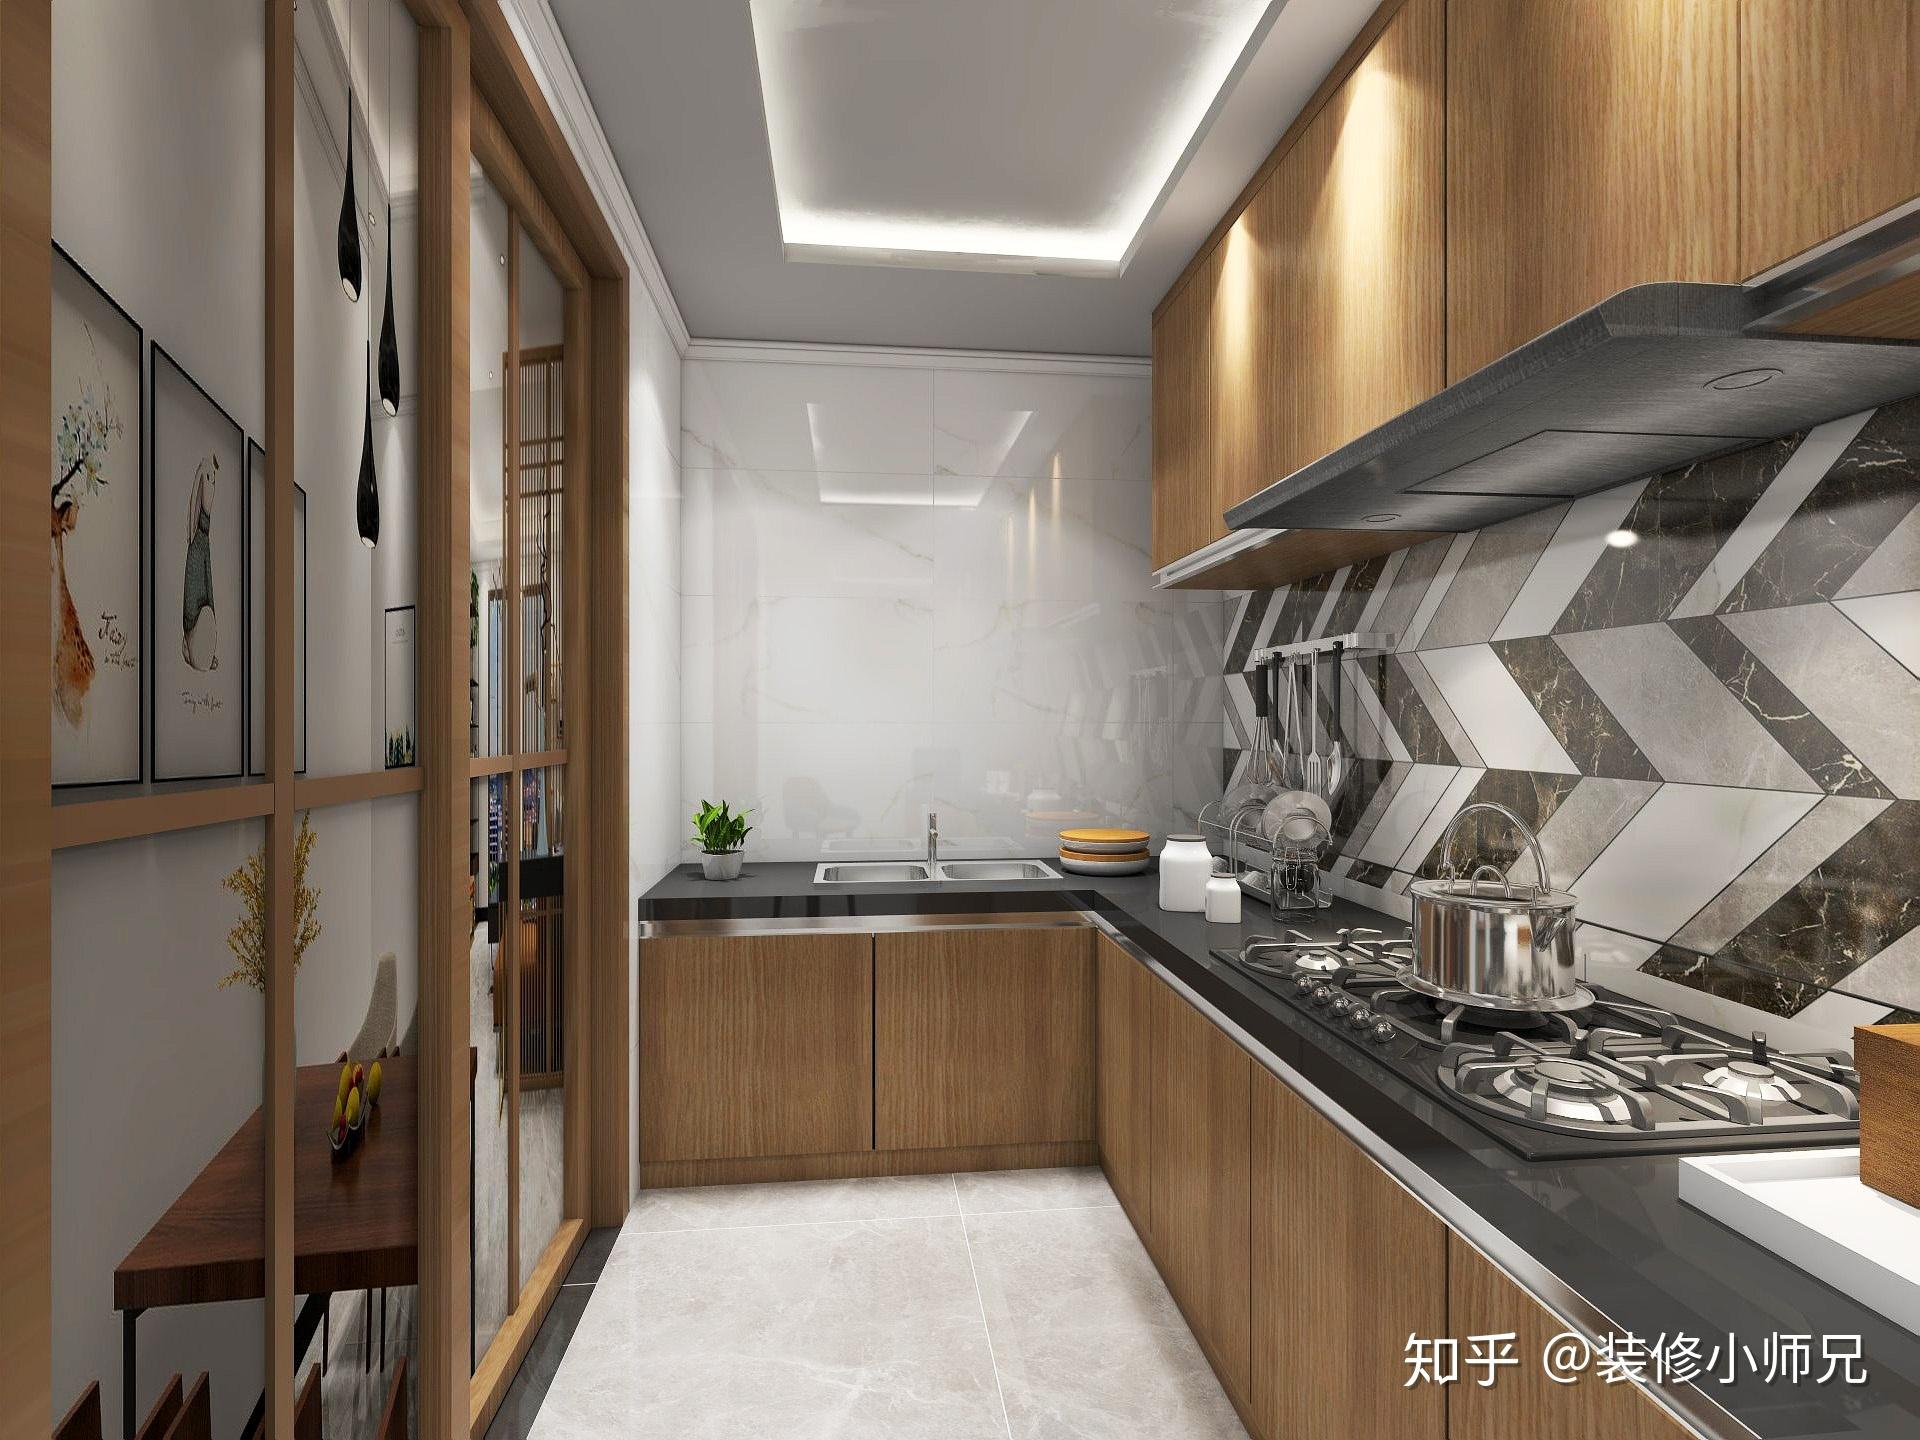 现代简约厨房铝扣板吊顶图片 – 设计本装修效果图